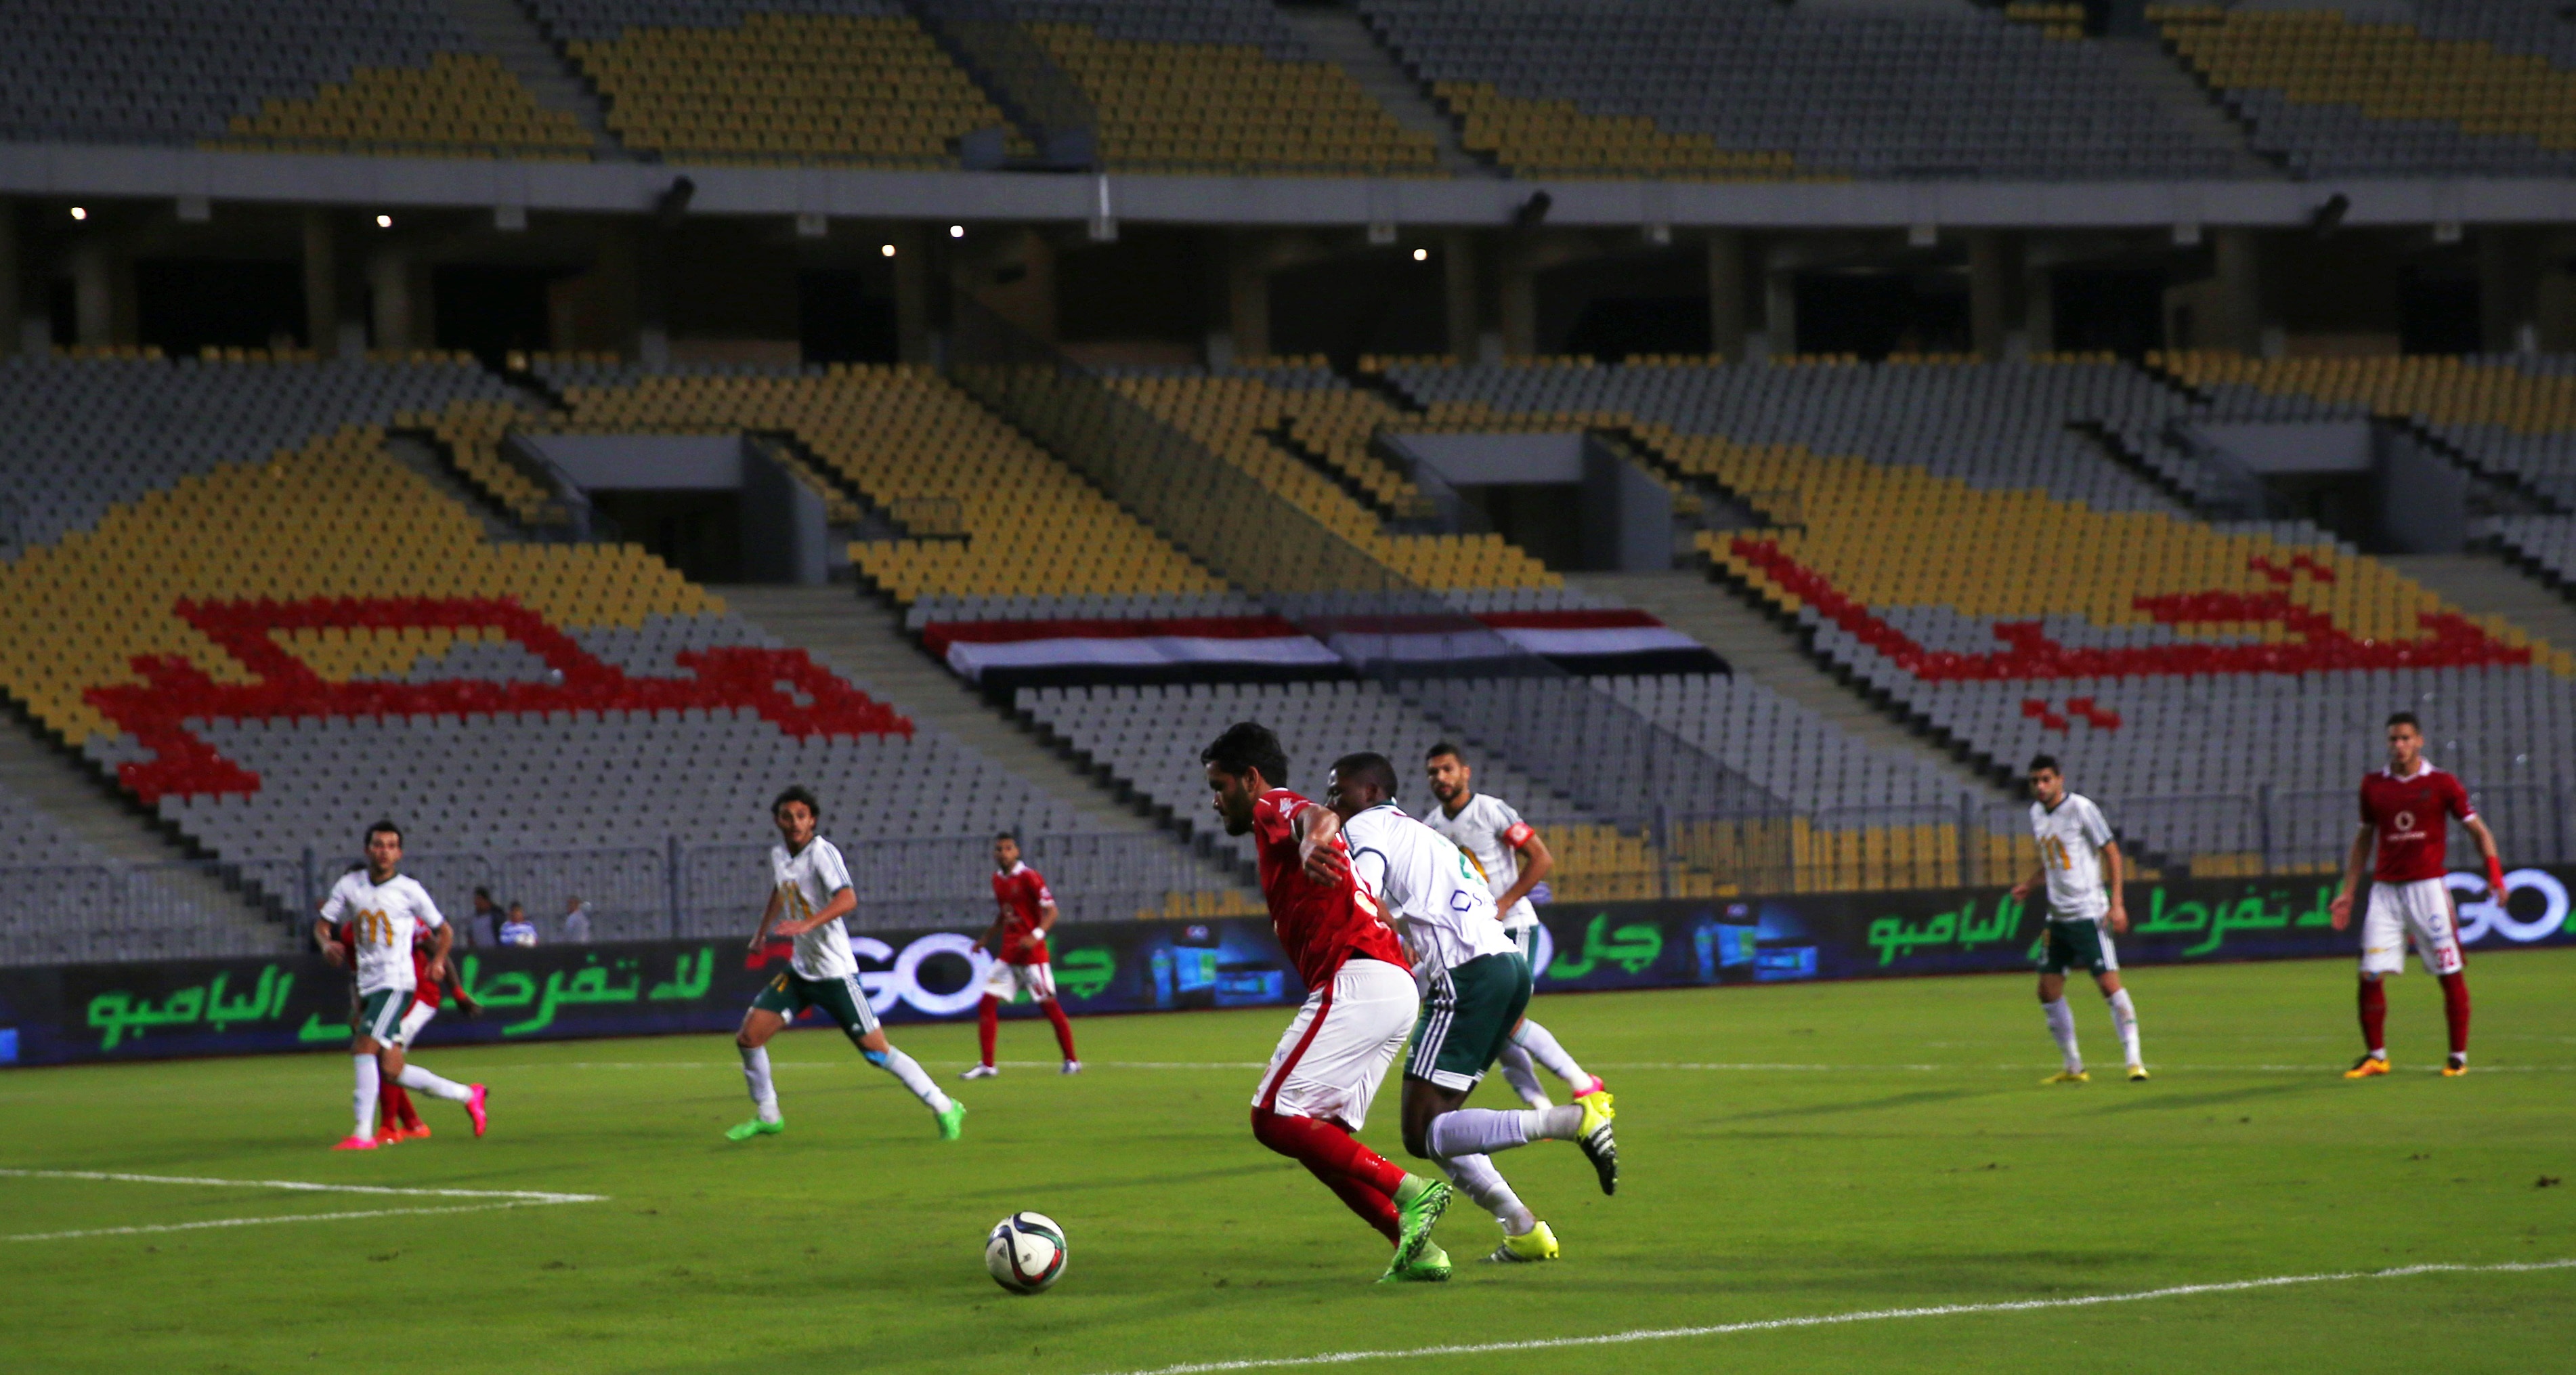 مباراة بالدوري المصري الممتاز لعبت بدون متفرجين لأسباب أمنية (رويترز)